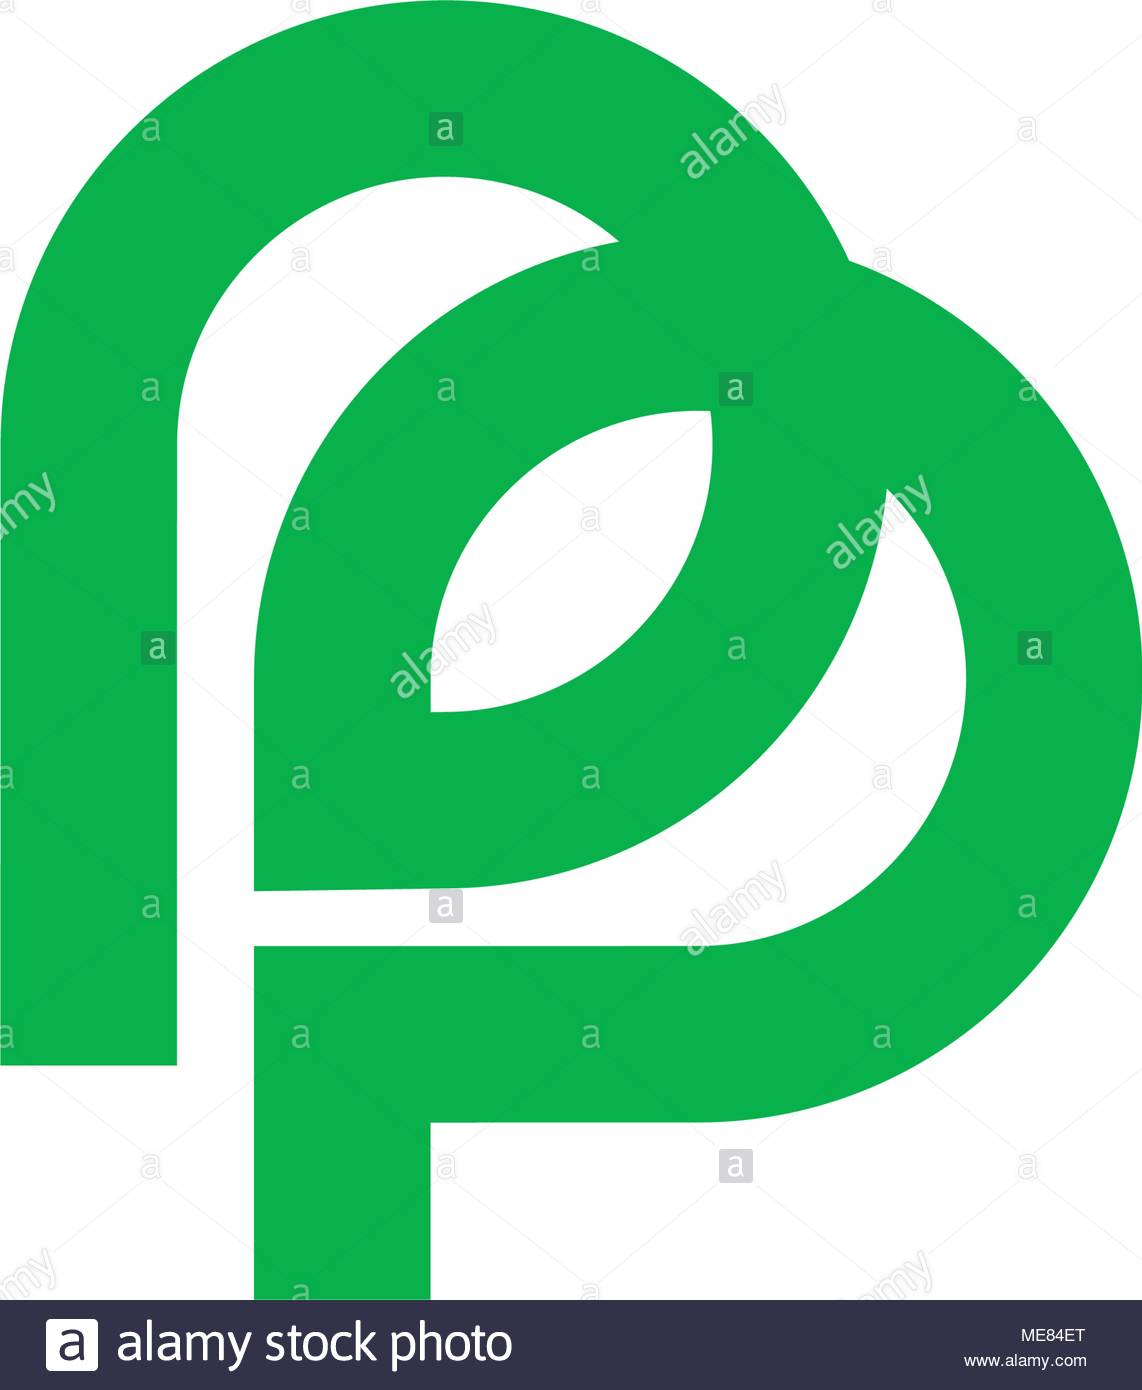 Anfangsbuchstabe P Oder Pp Logo Design In Herz Form Stock Vektorgrafik Alamy